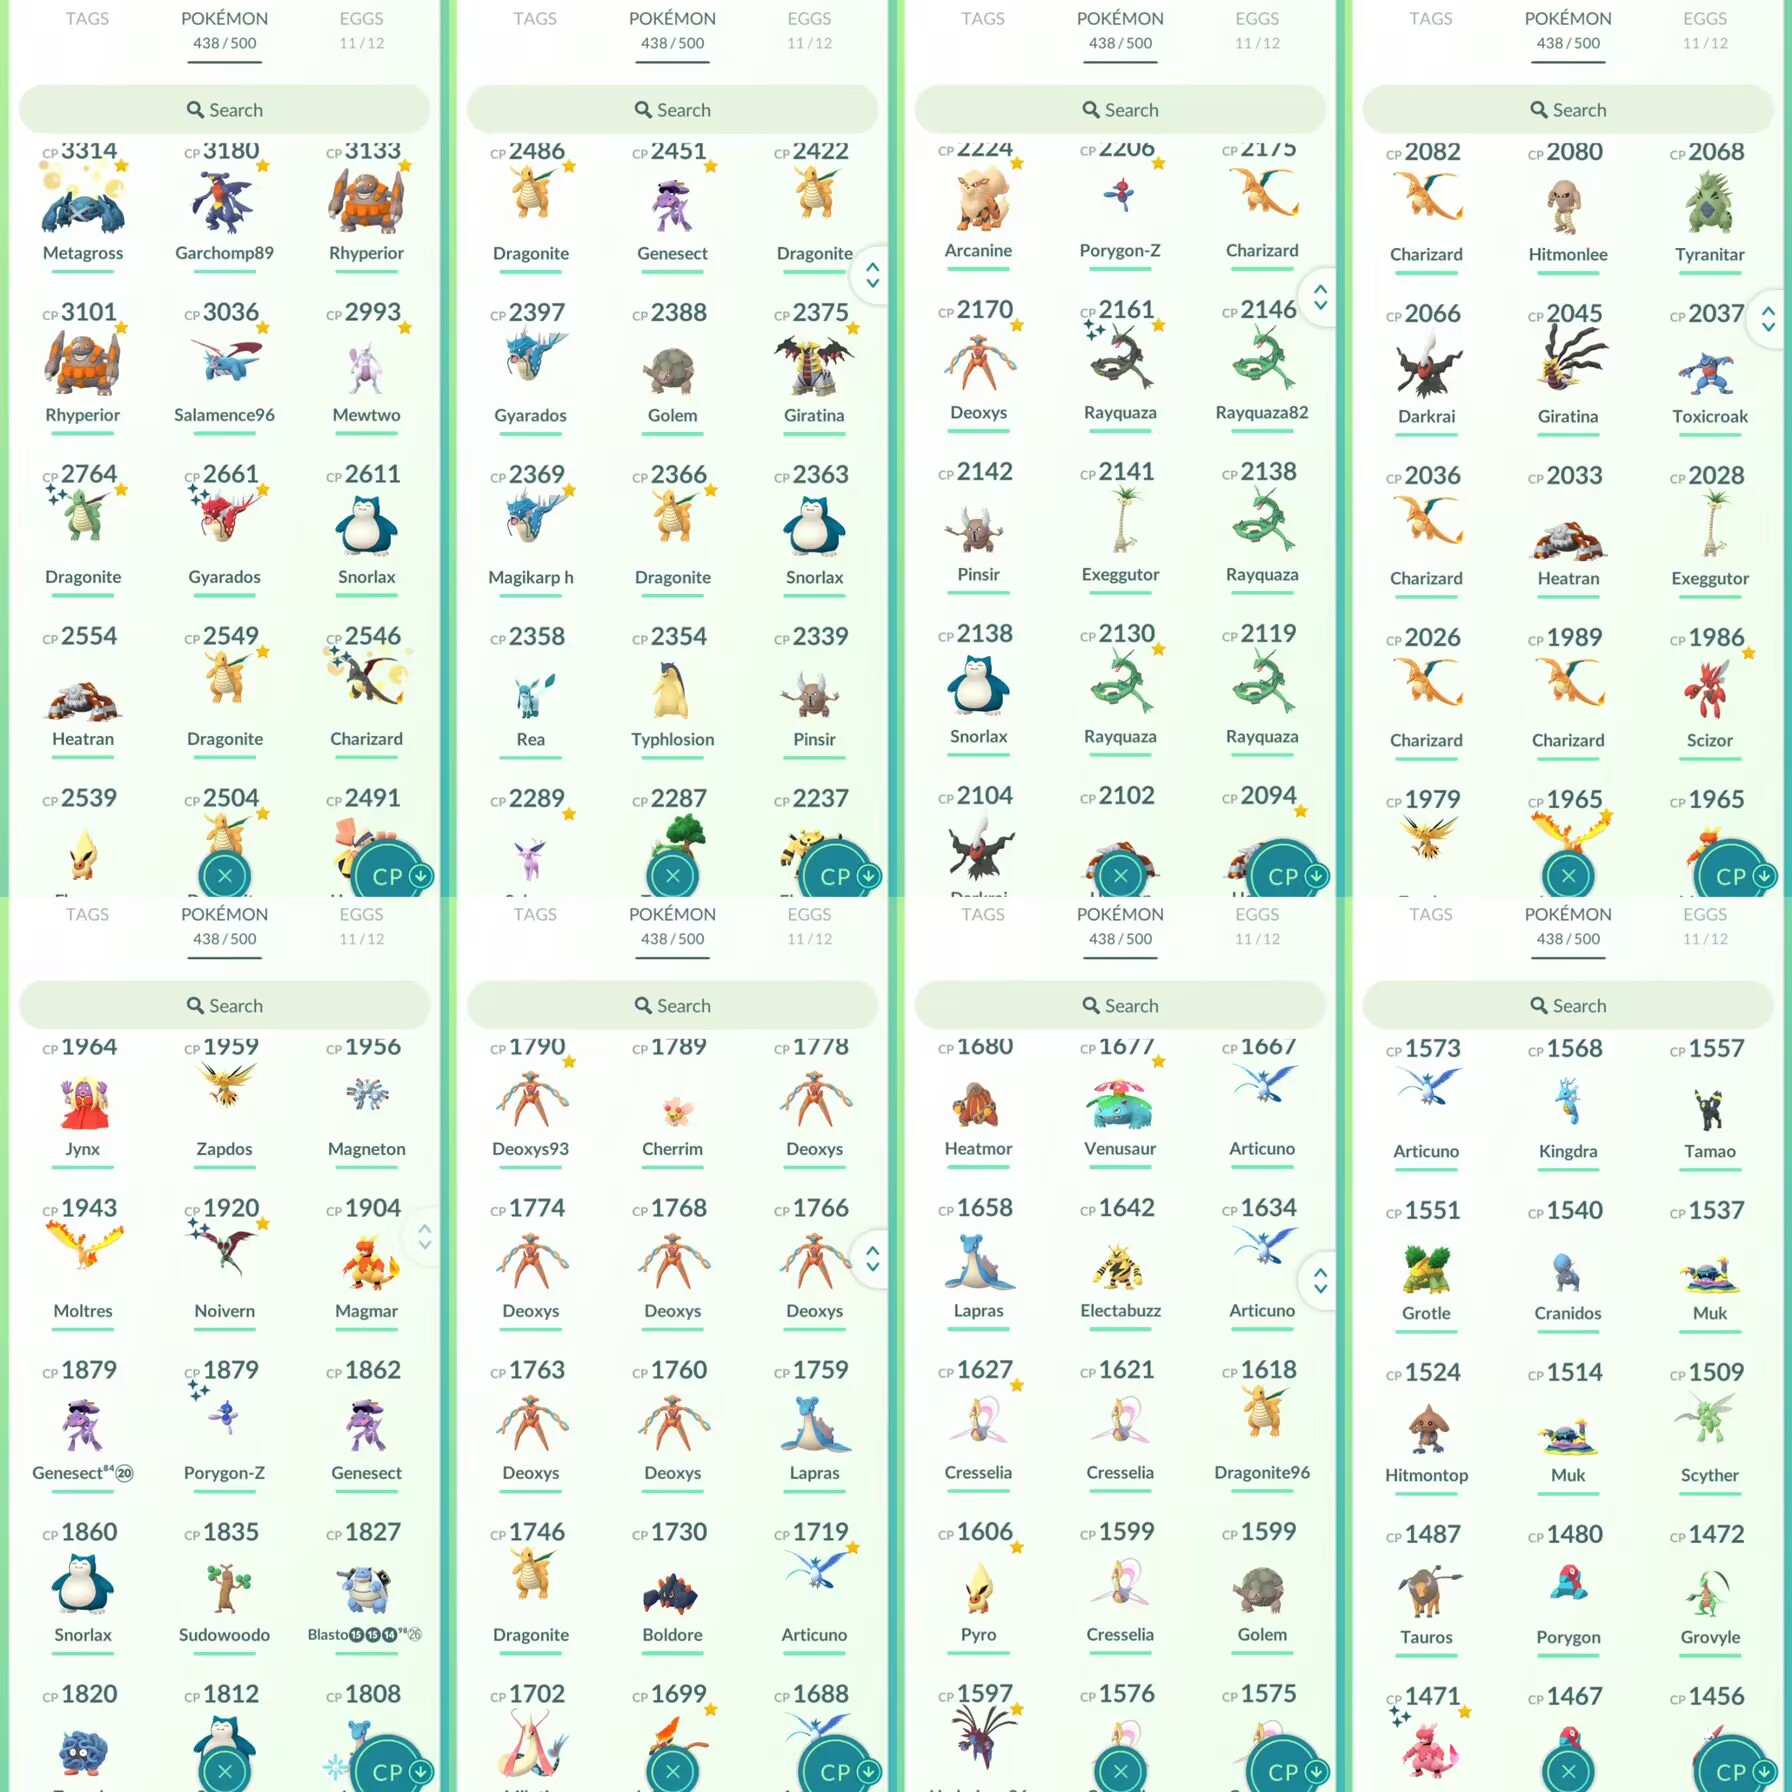 lvl31, hanno 26 Legendary, Mewtwo Shiny Rayquaza ecc, hanno 43 Shiny, hanno molti bei pokemons N8209